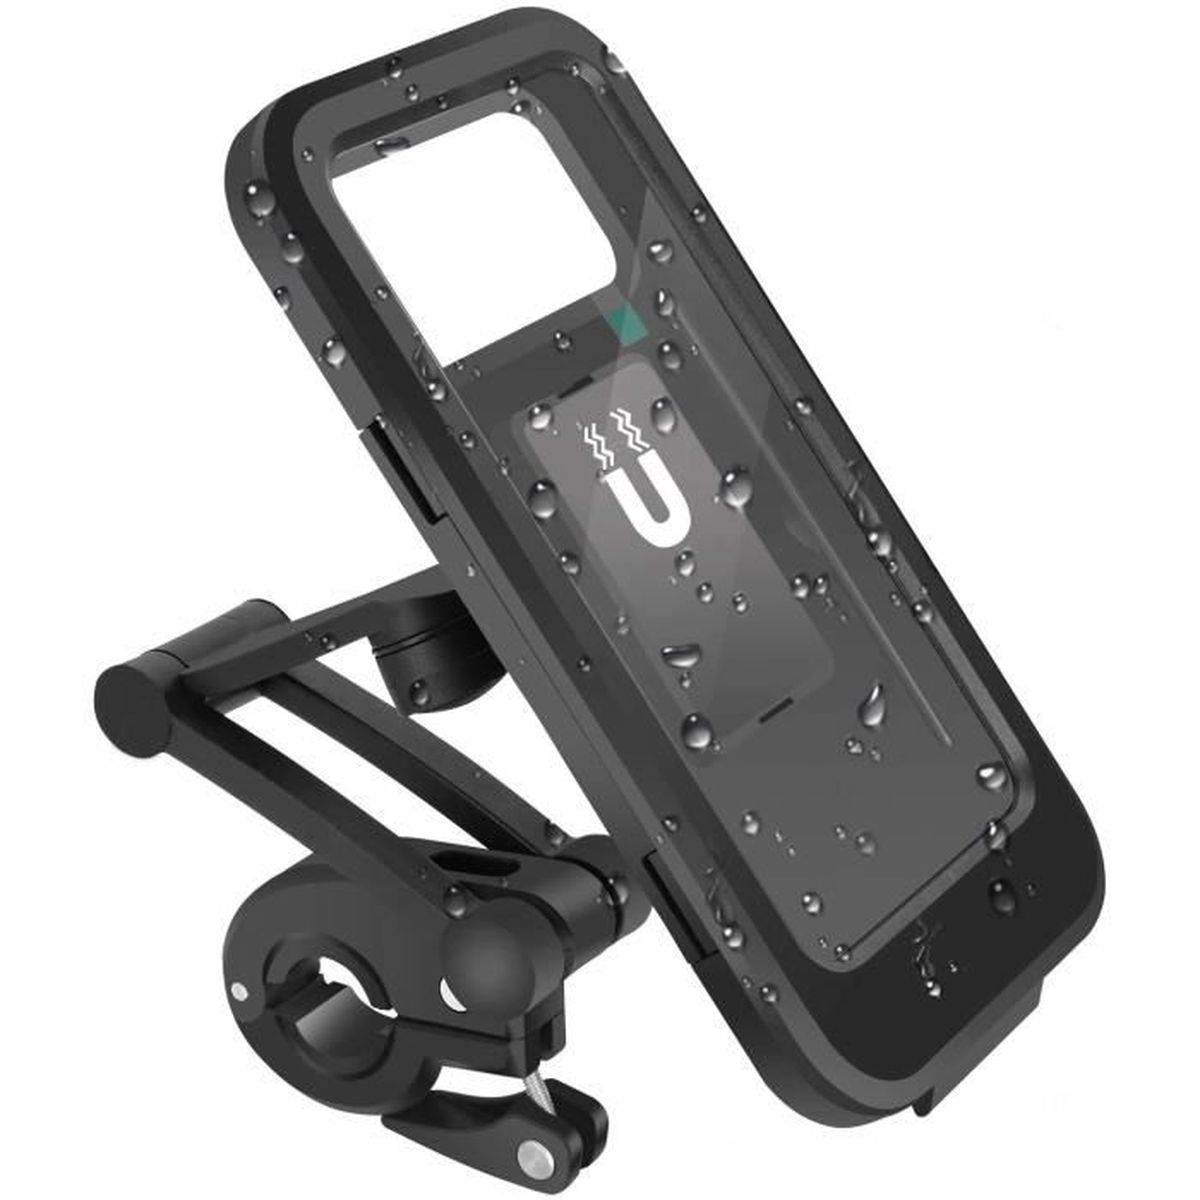 Acrhkoor Support Téléphone Vélo Huawei Support Téléphone Moto Universel Porte Vélo du Guidon avec 360° Rotation pour iPhone 13/12 Appareils 4,0-7,0” Démontage Rapide 1S Samsung S22/S21 